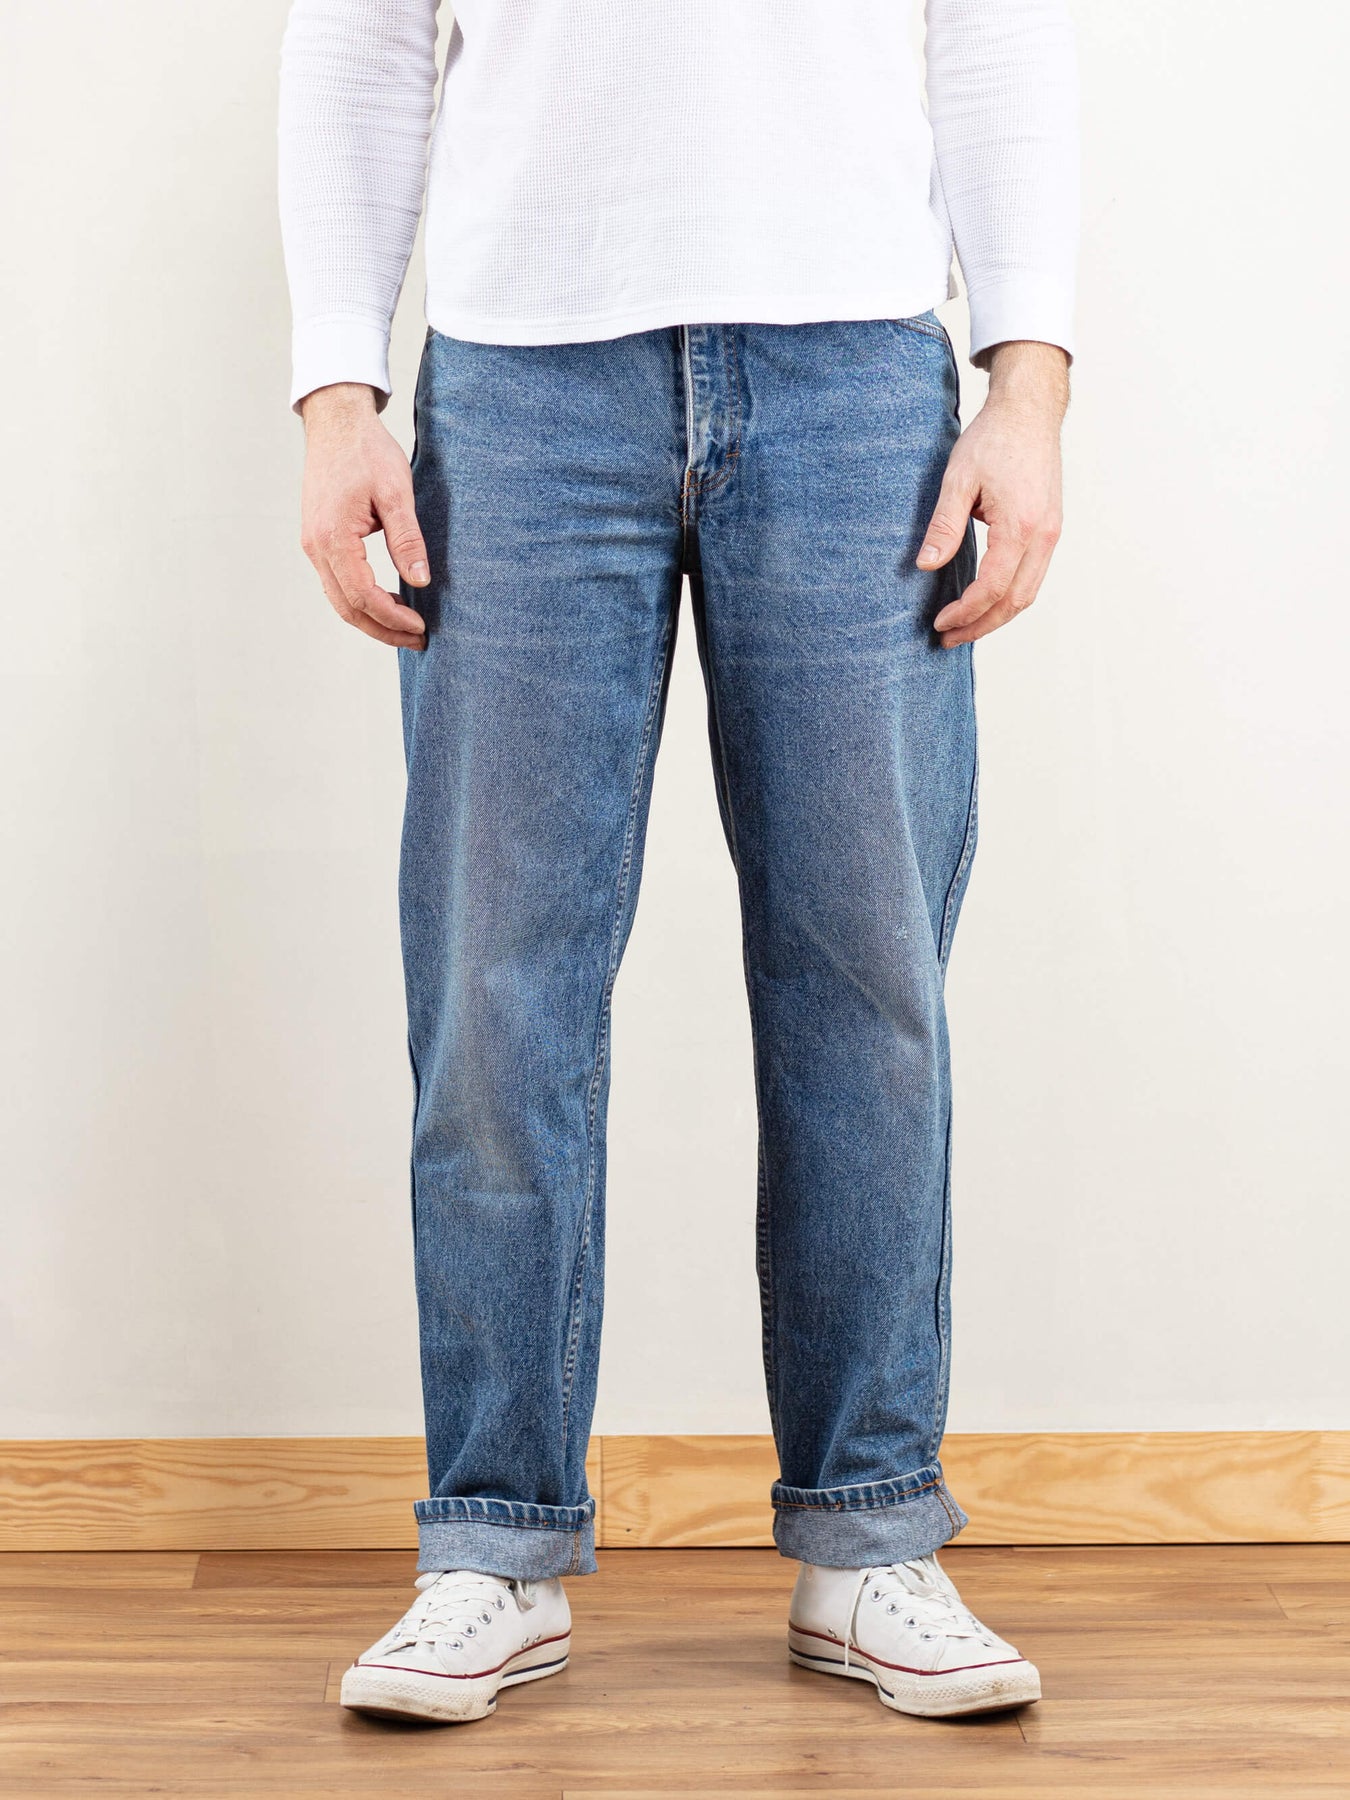 P-INDFC11 - 11oz. FR Comfort Flex Jeans for Men Cotton Blend – LAPCO  Factory Outlet Store